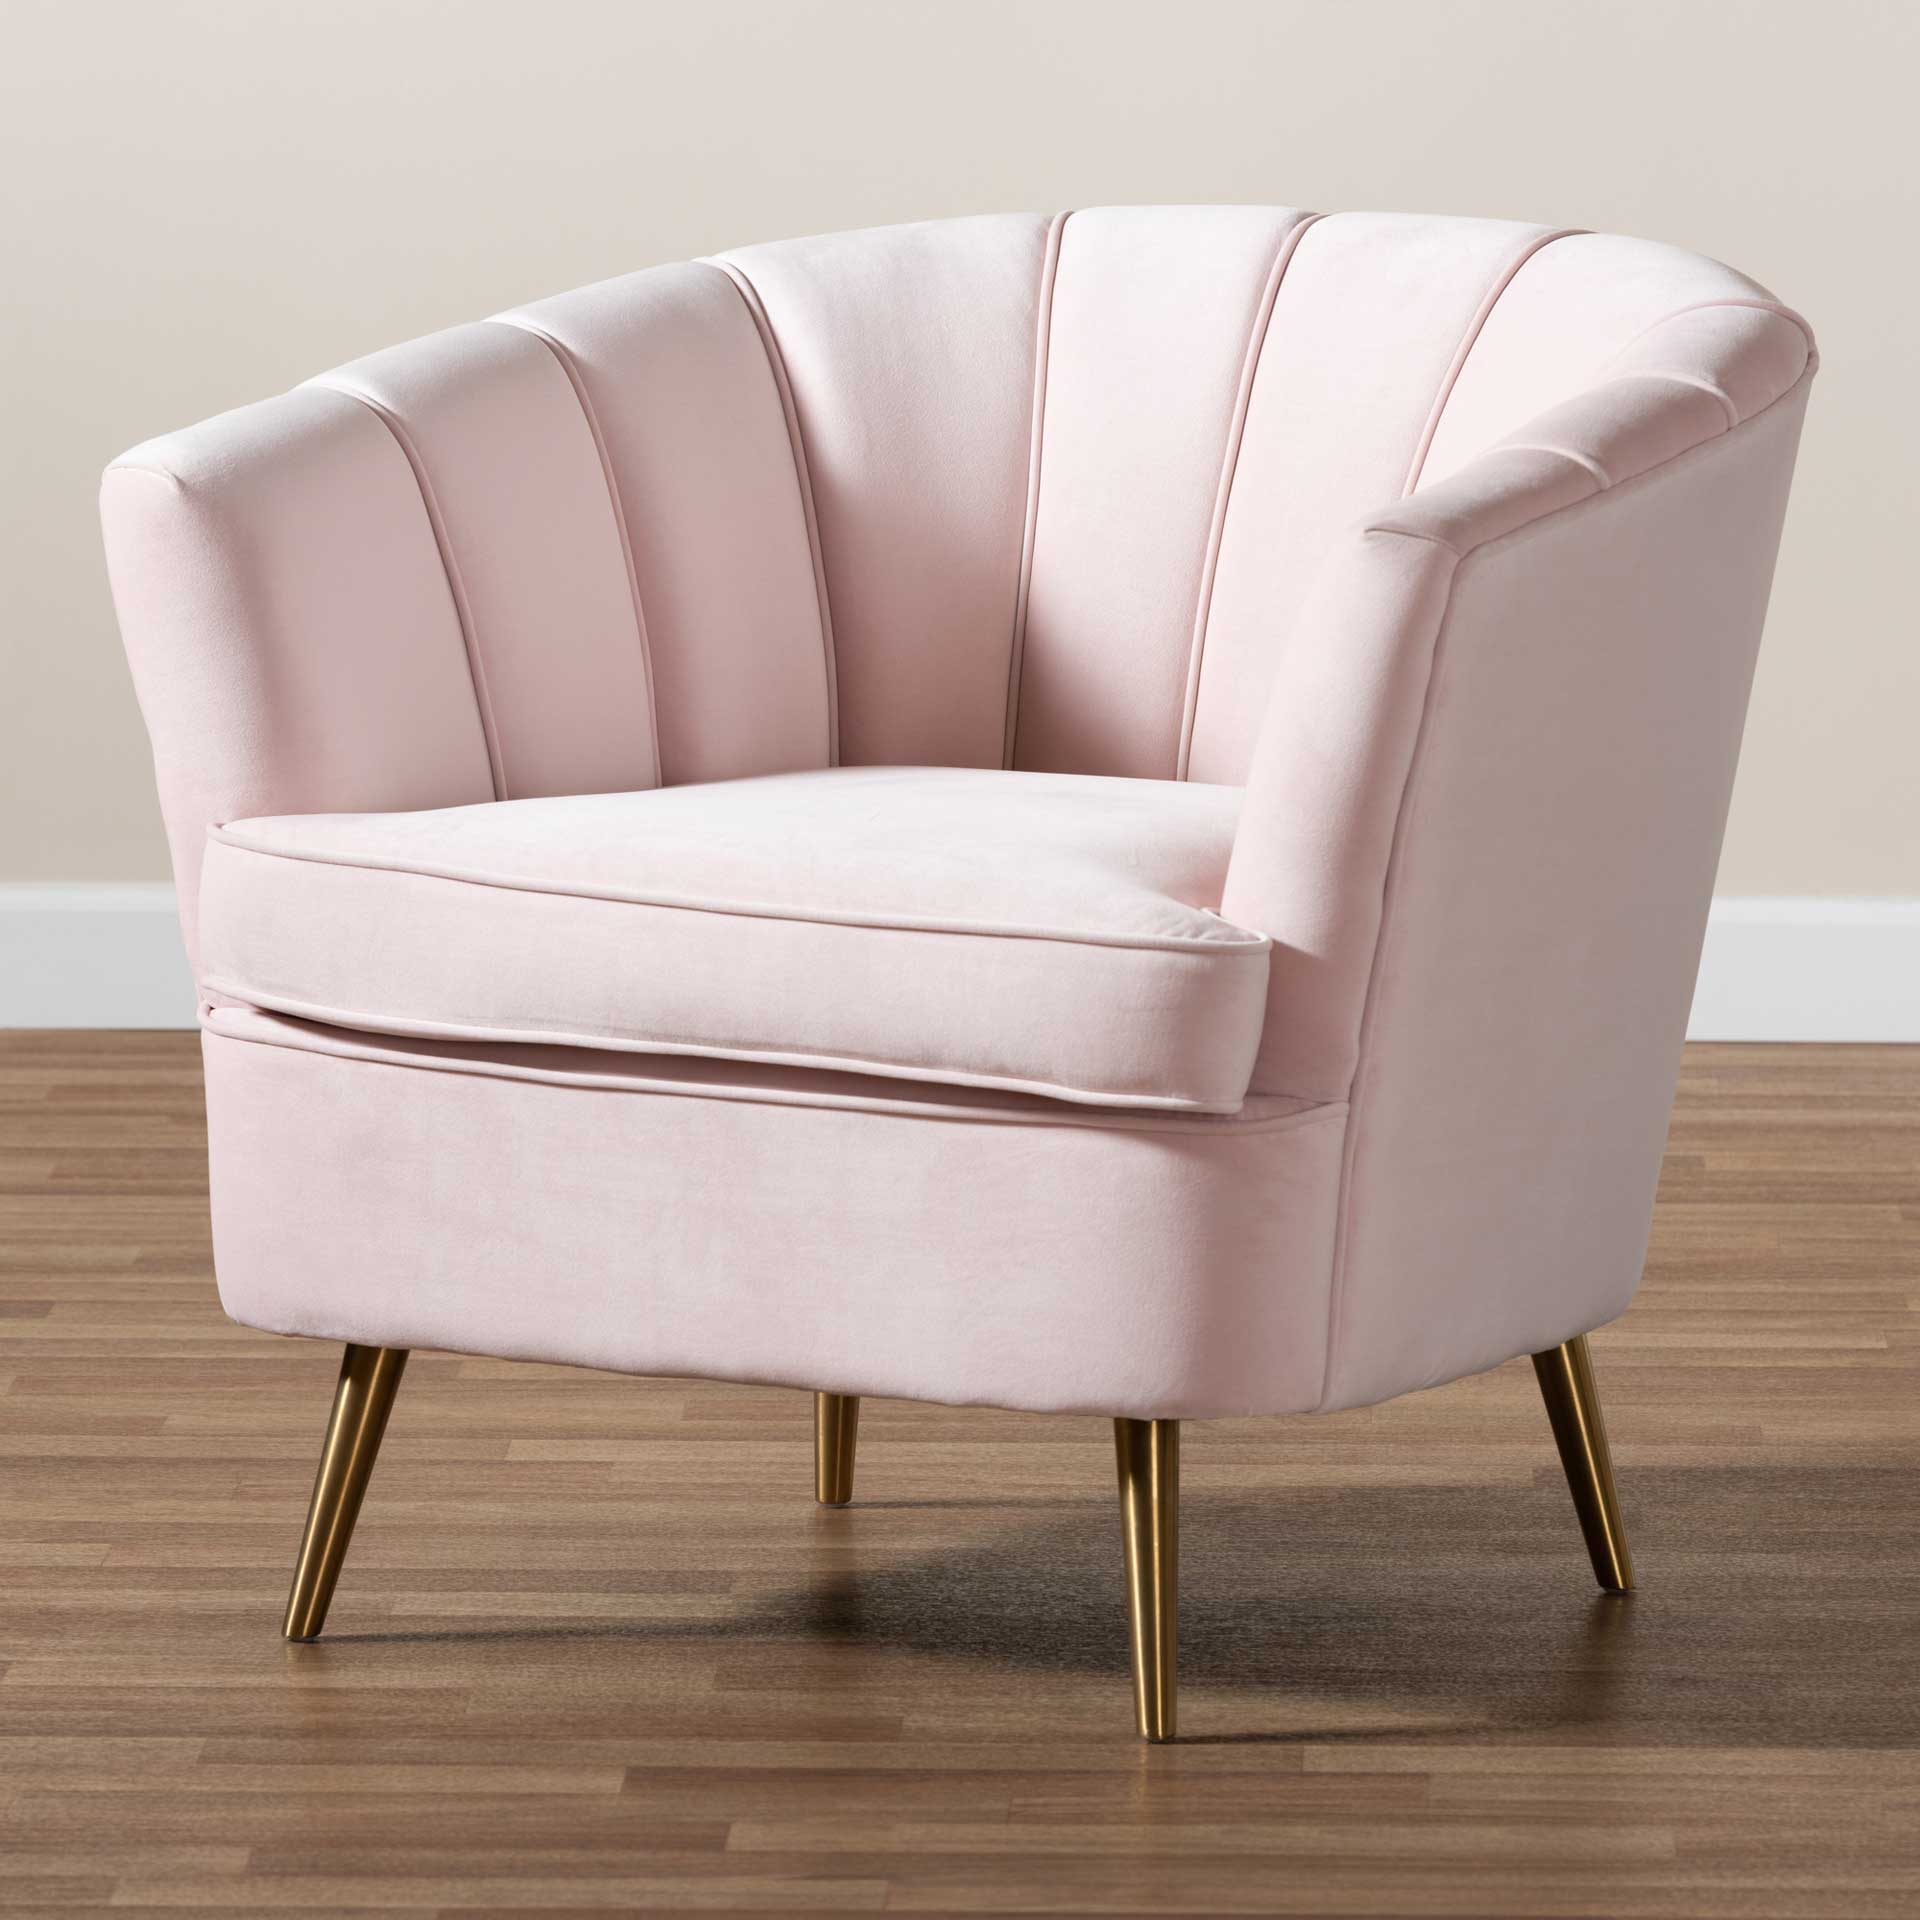 Emara Velvet Fabric Upholstered Chair Light Pink/Gold